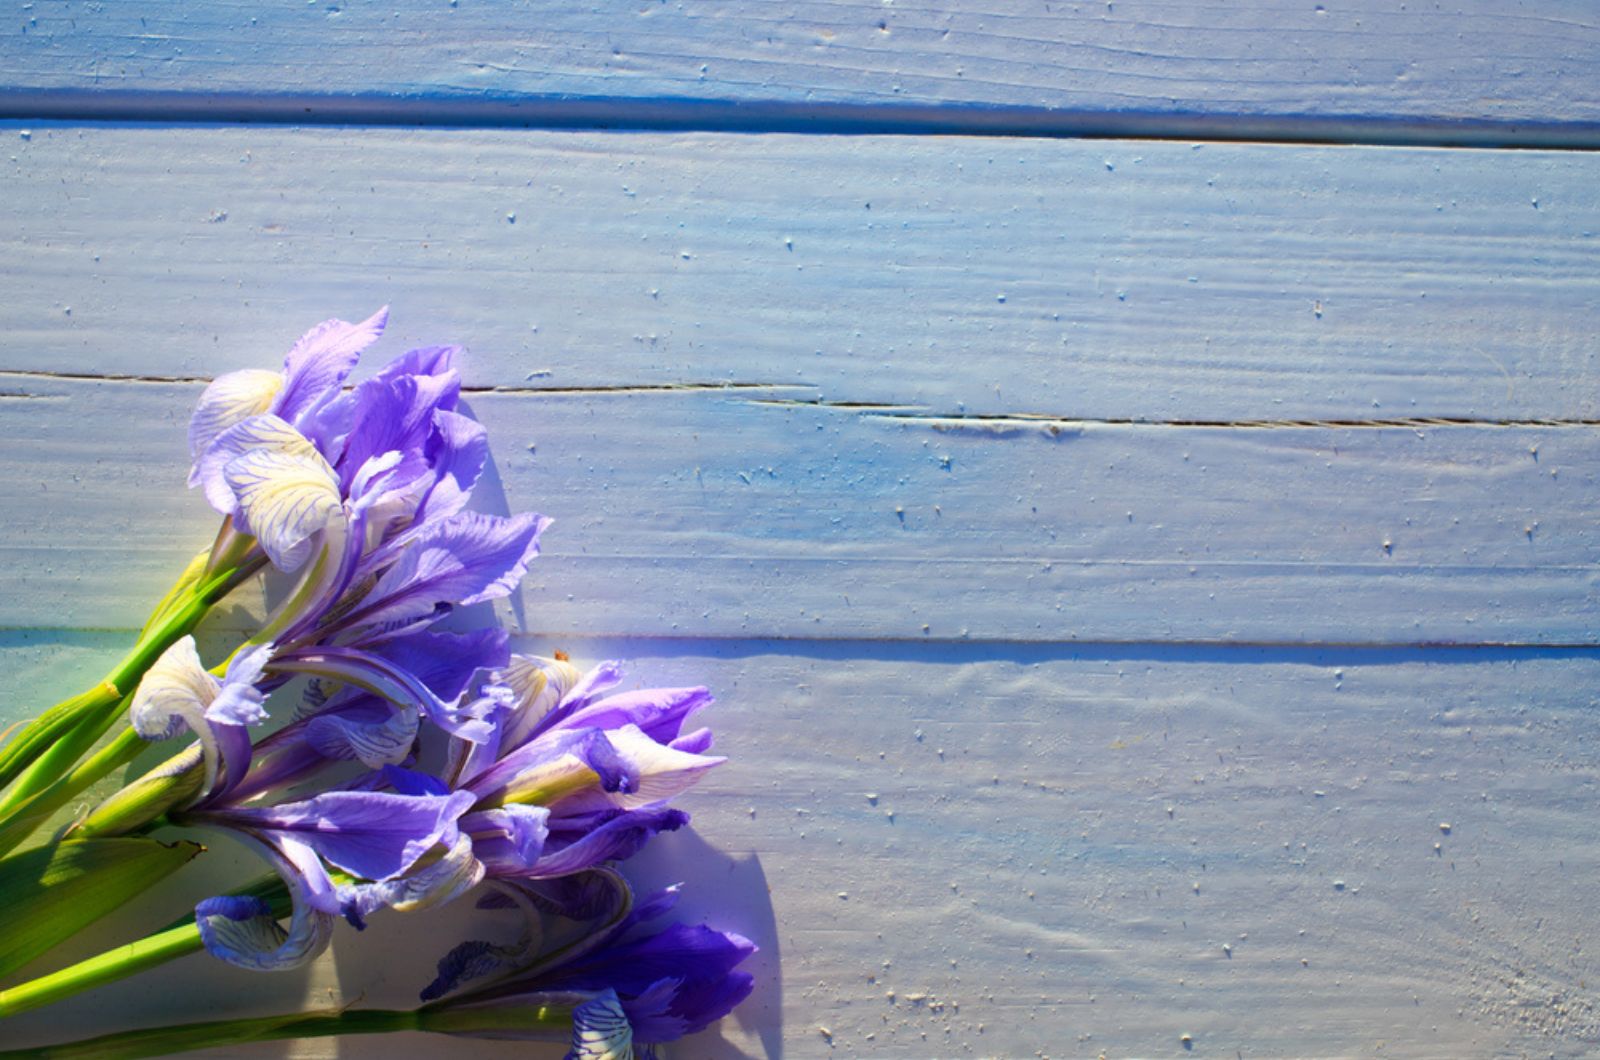 siberian iris flowers on wooden table